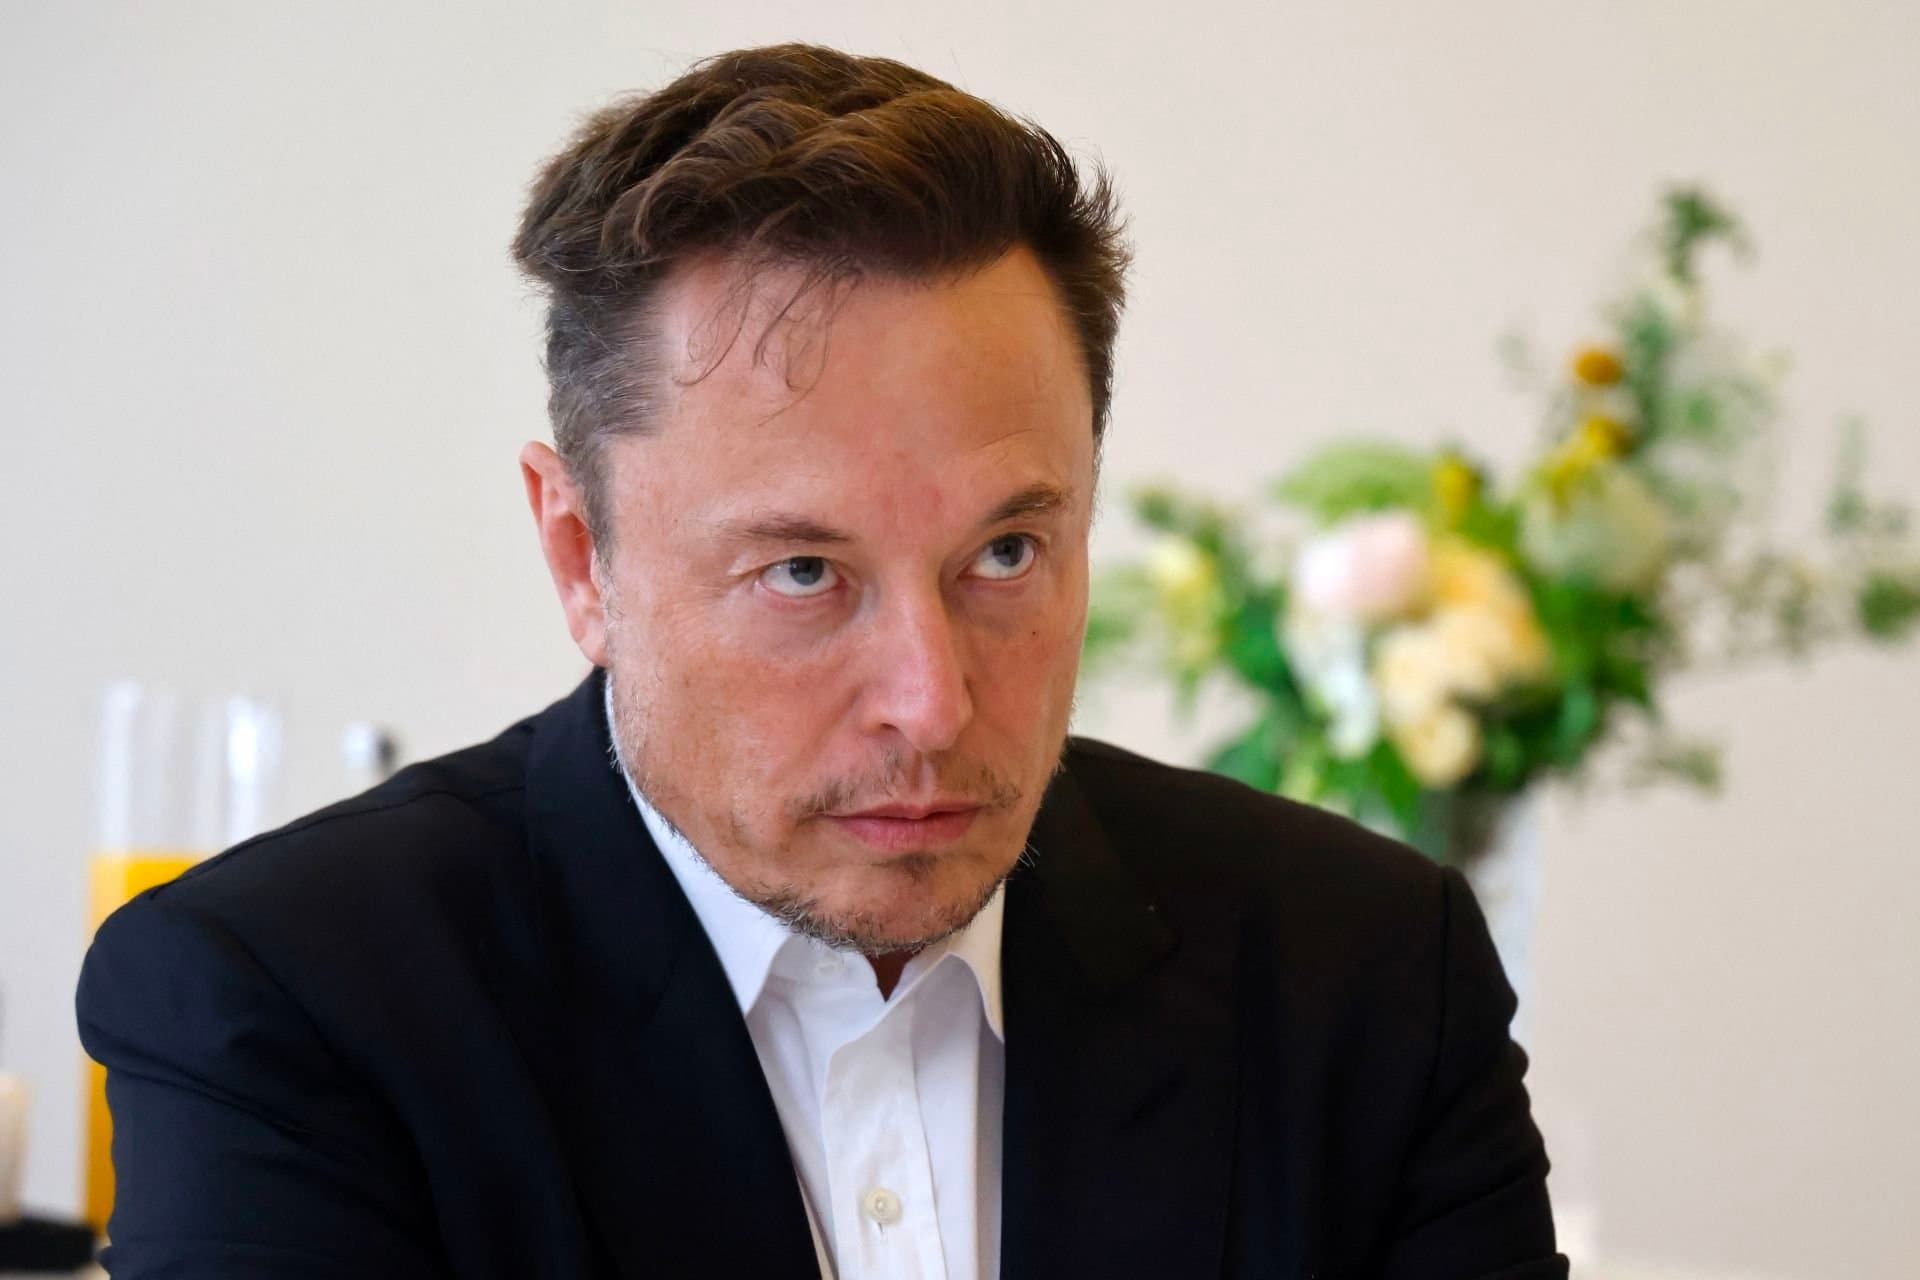 نگاه خیره ایلان ماسک / Elon Musk با چهره جدی